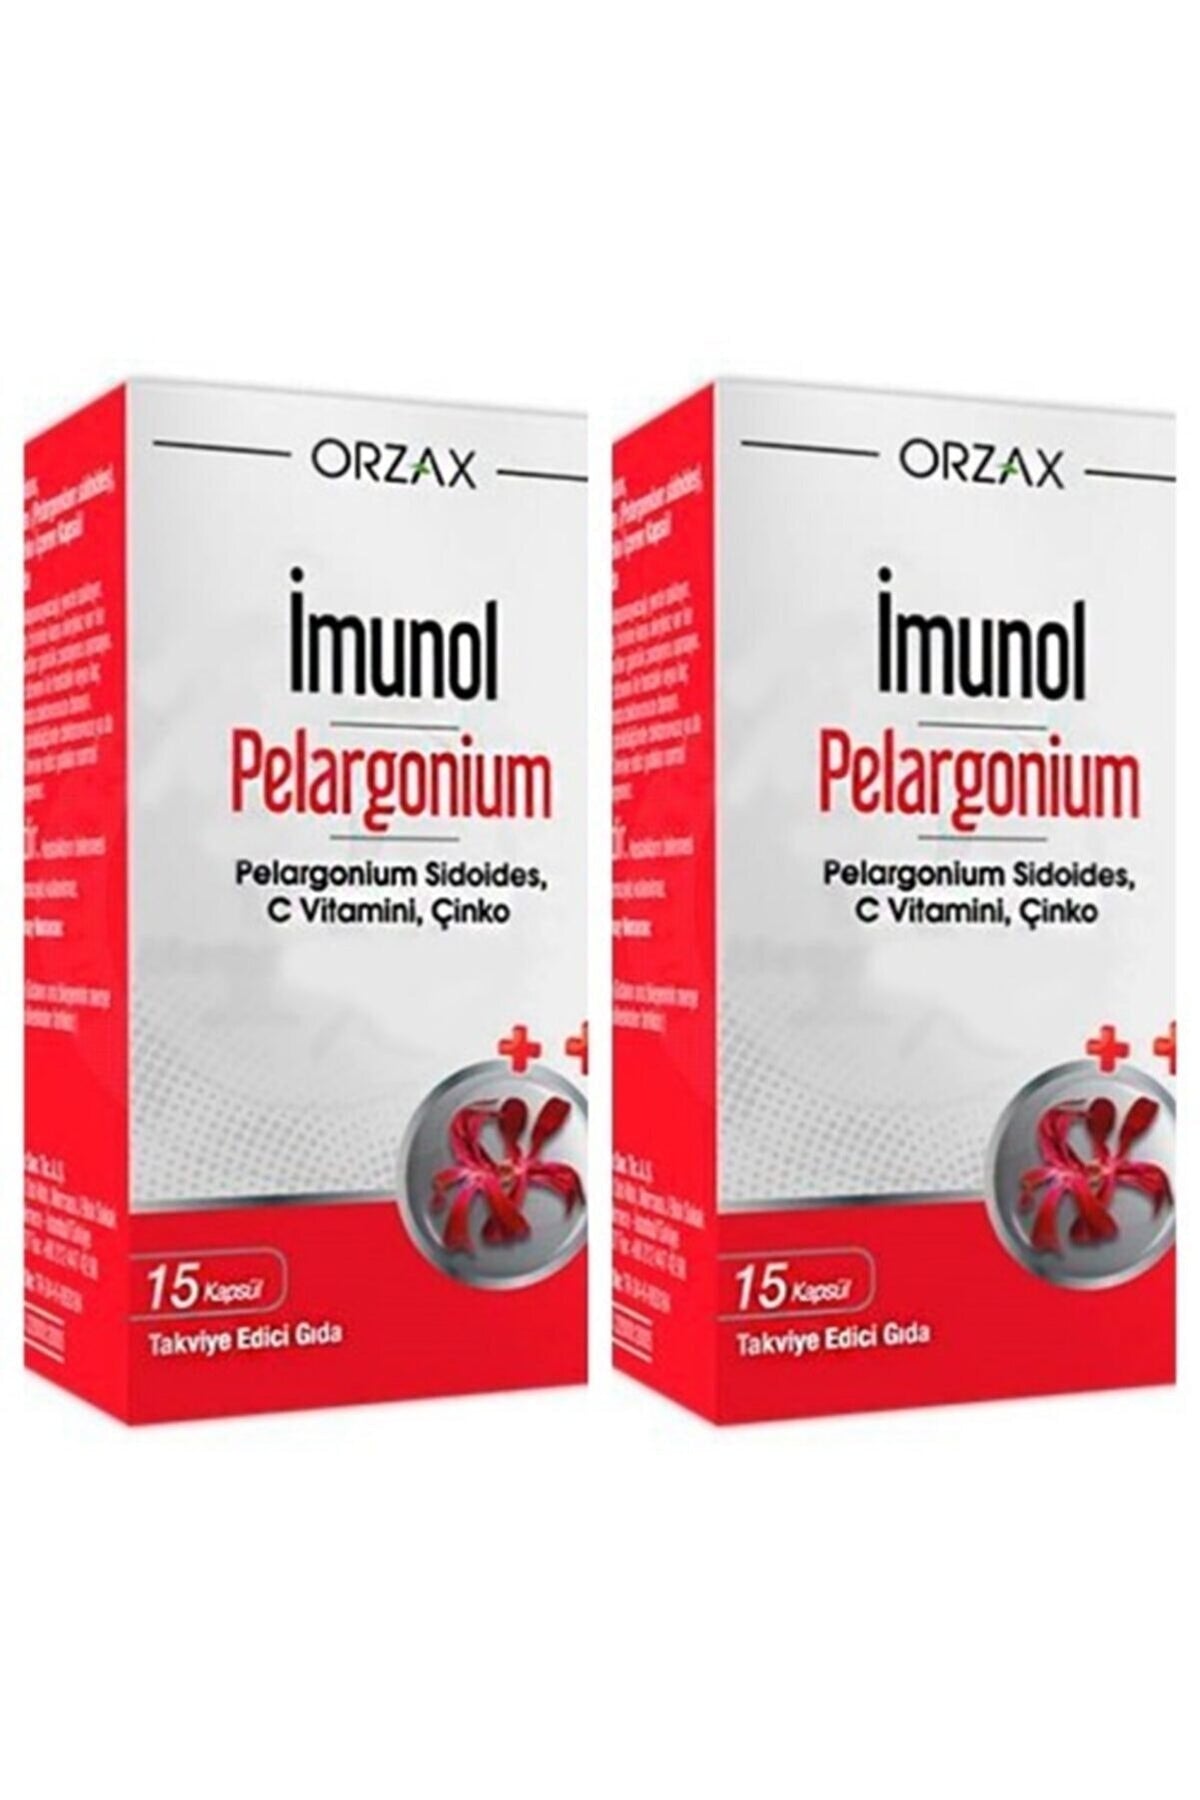 Orzax Imunol Pelargonium 15 Kapsül 1 Alana 1 Bedava